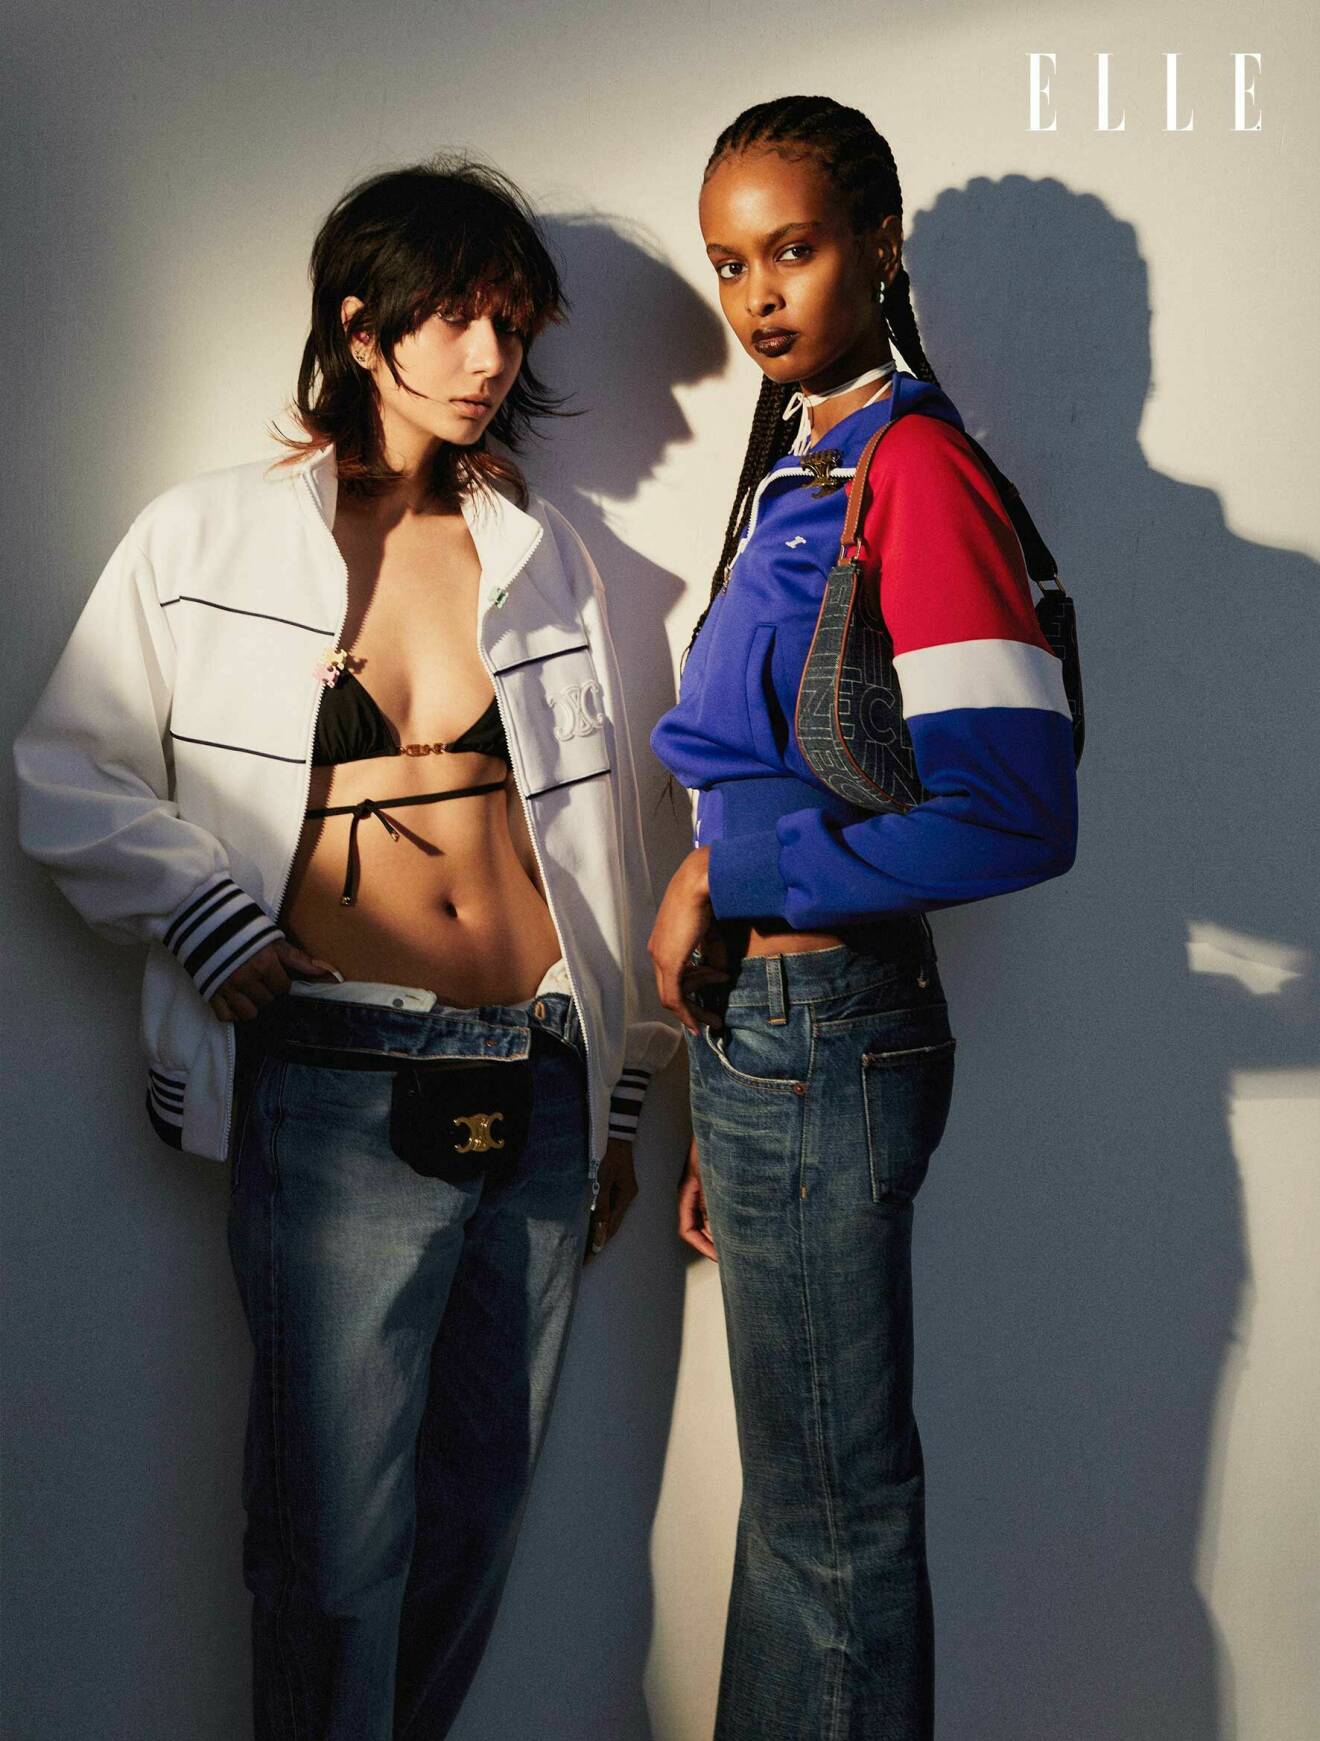 Sabina till vänster har på sig en vit jacka med en svart bikinitopp under och ett par jeans. Ikra till höger har på sig en jacka i blått, rött och vitt tillsammans med jeans.